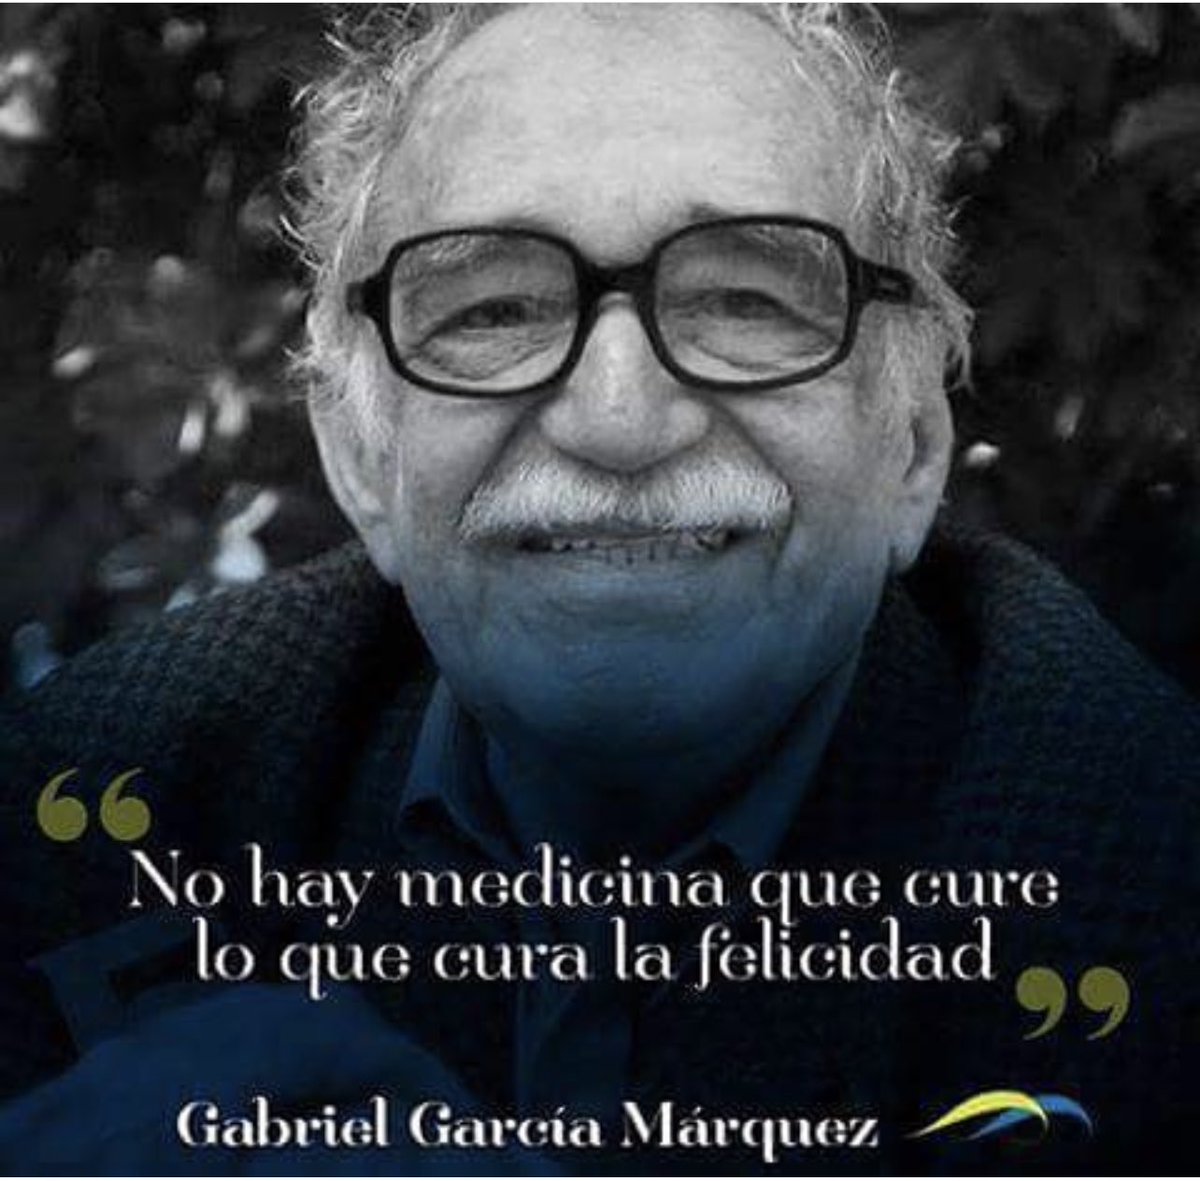 Hace 9 años fallecía Gabo. 
Hasta siempre @GabrieIGarciaM. 
#GaboEterno